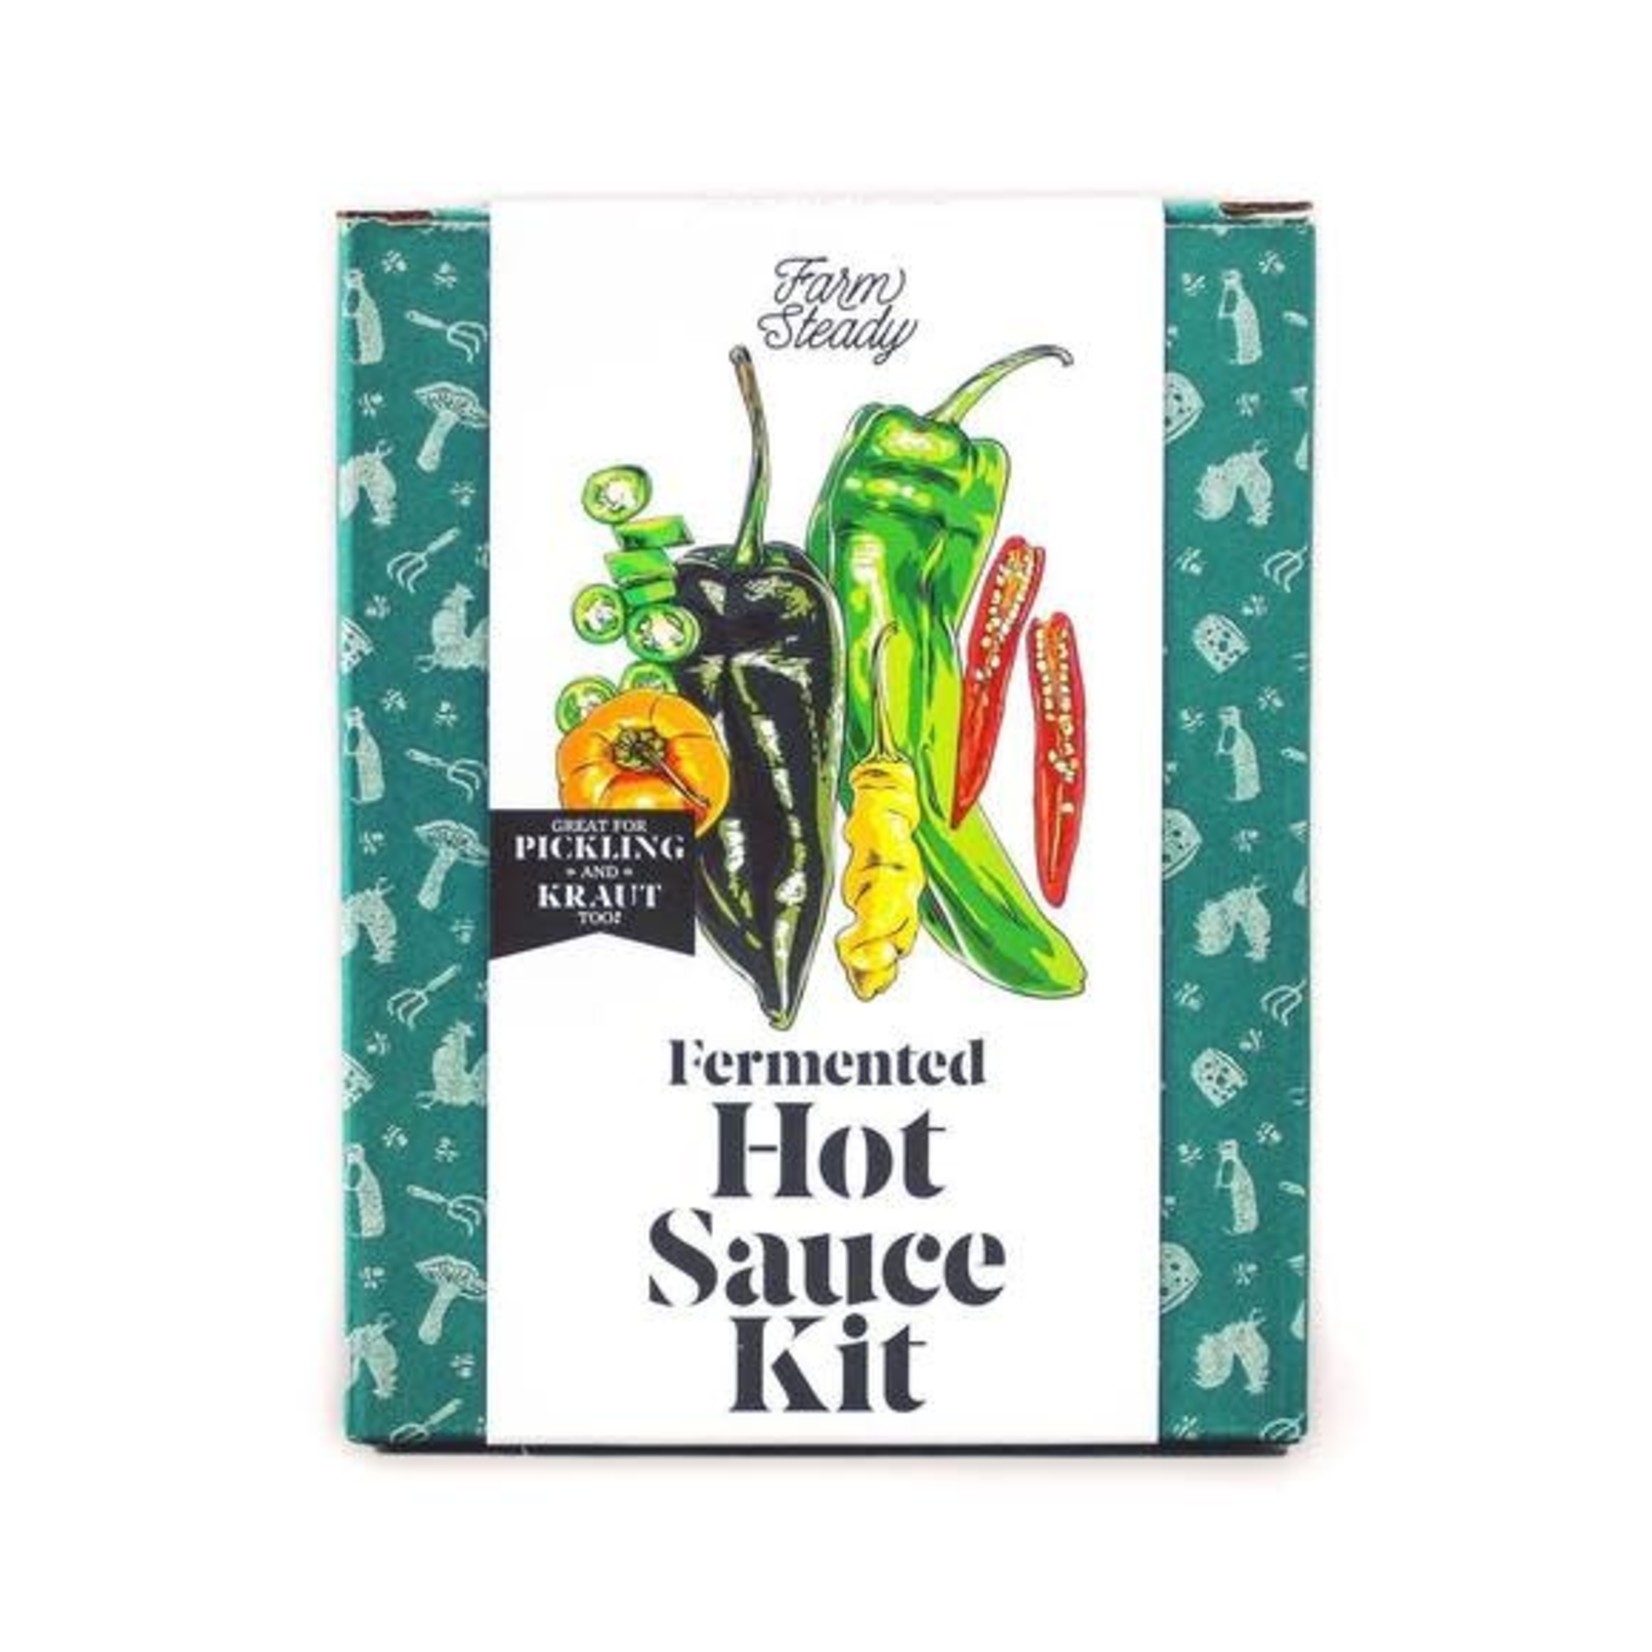 Farm Steady Fermented Hot Sauce Kit